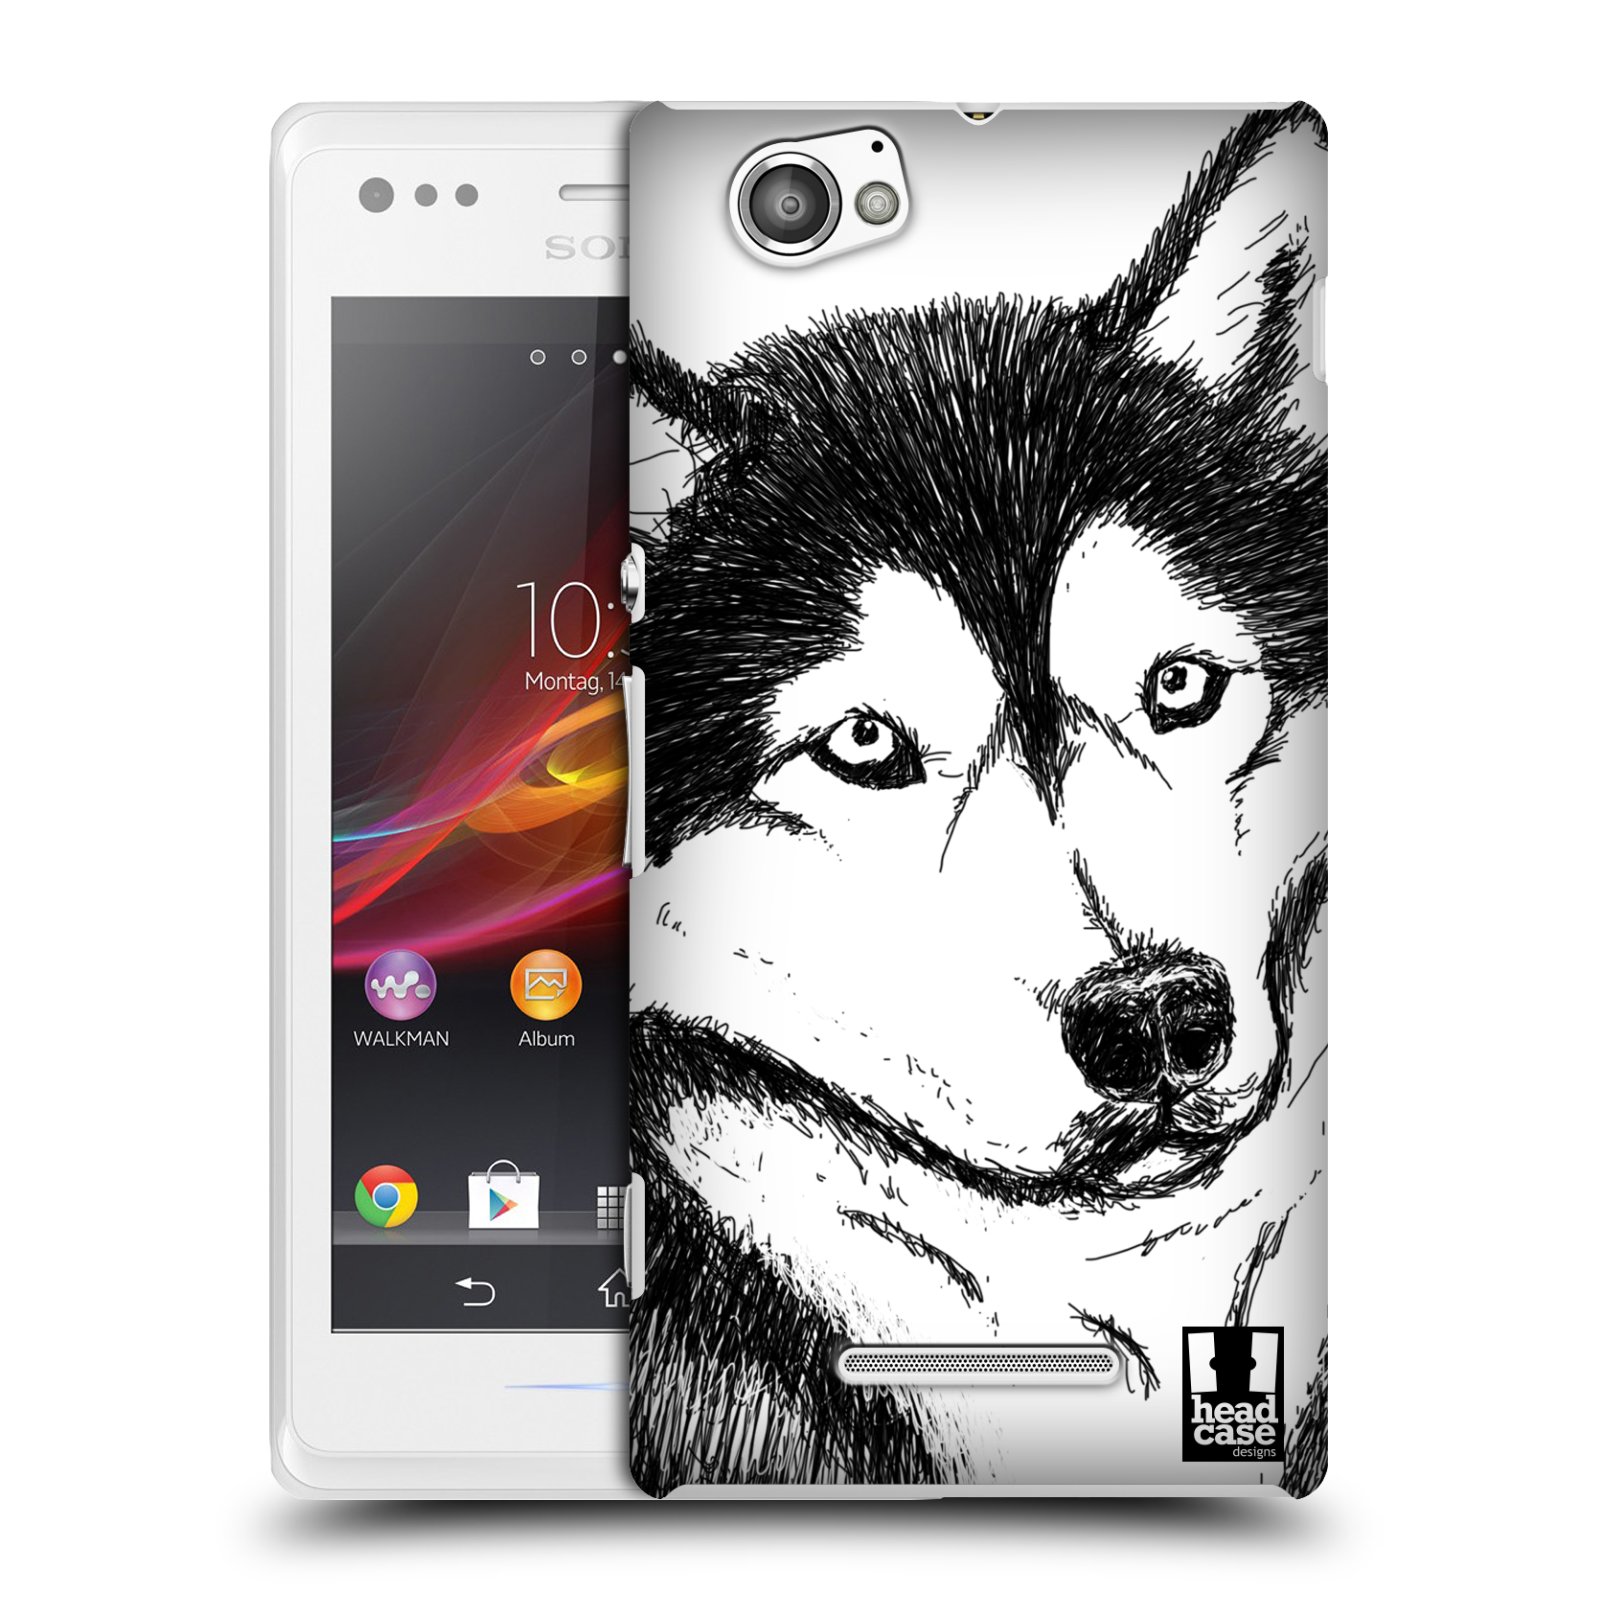 HEAD CASE plastový obal na mobil Sony Xperia M vzor Kreslená zvířátka černá a bílá pes husky